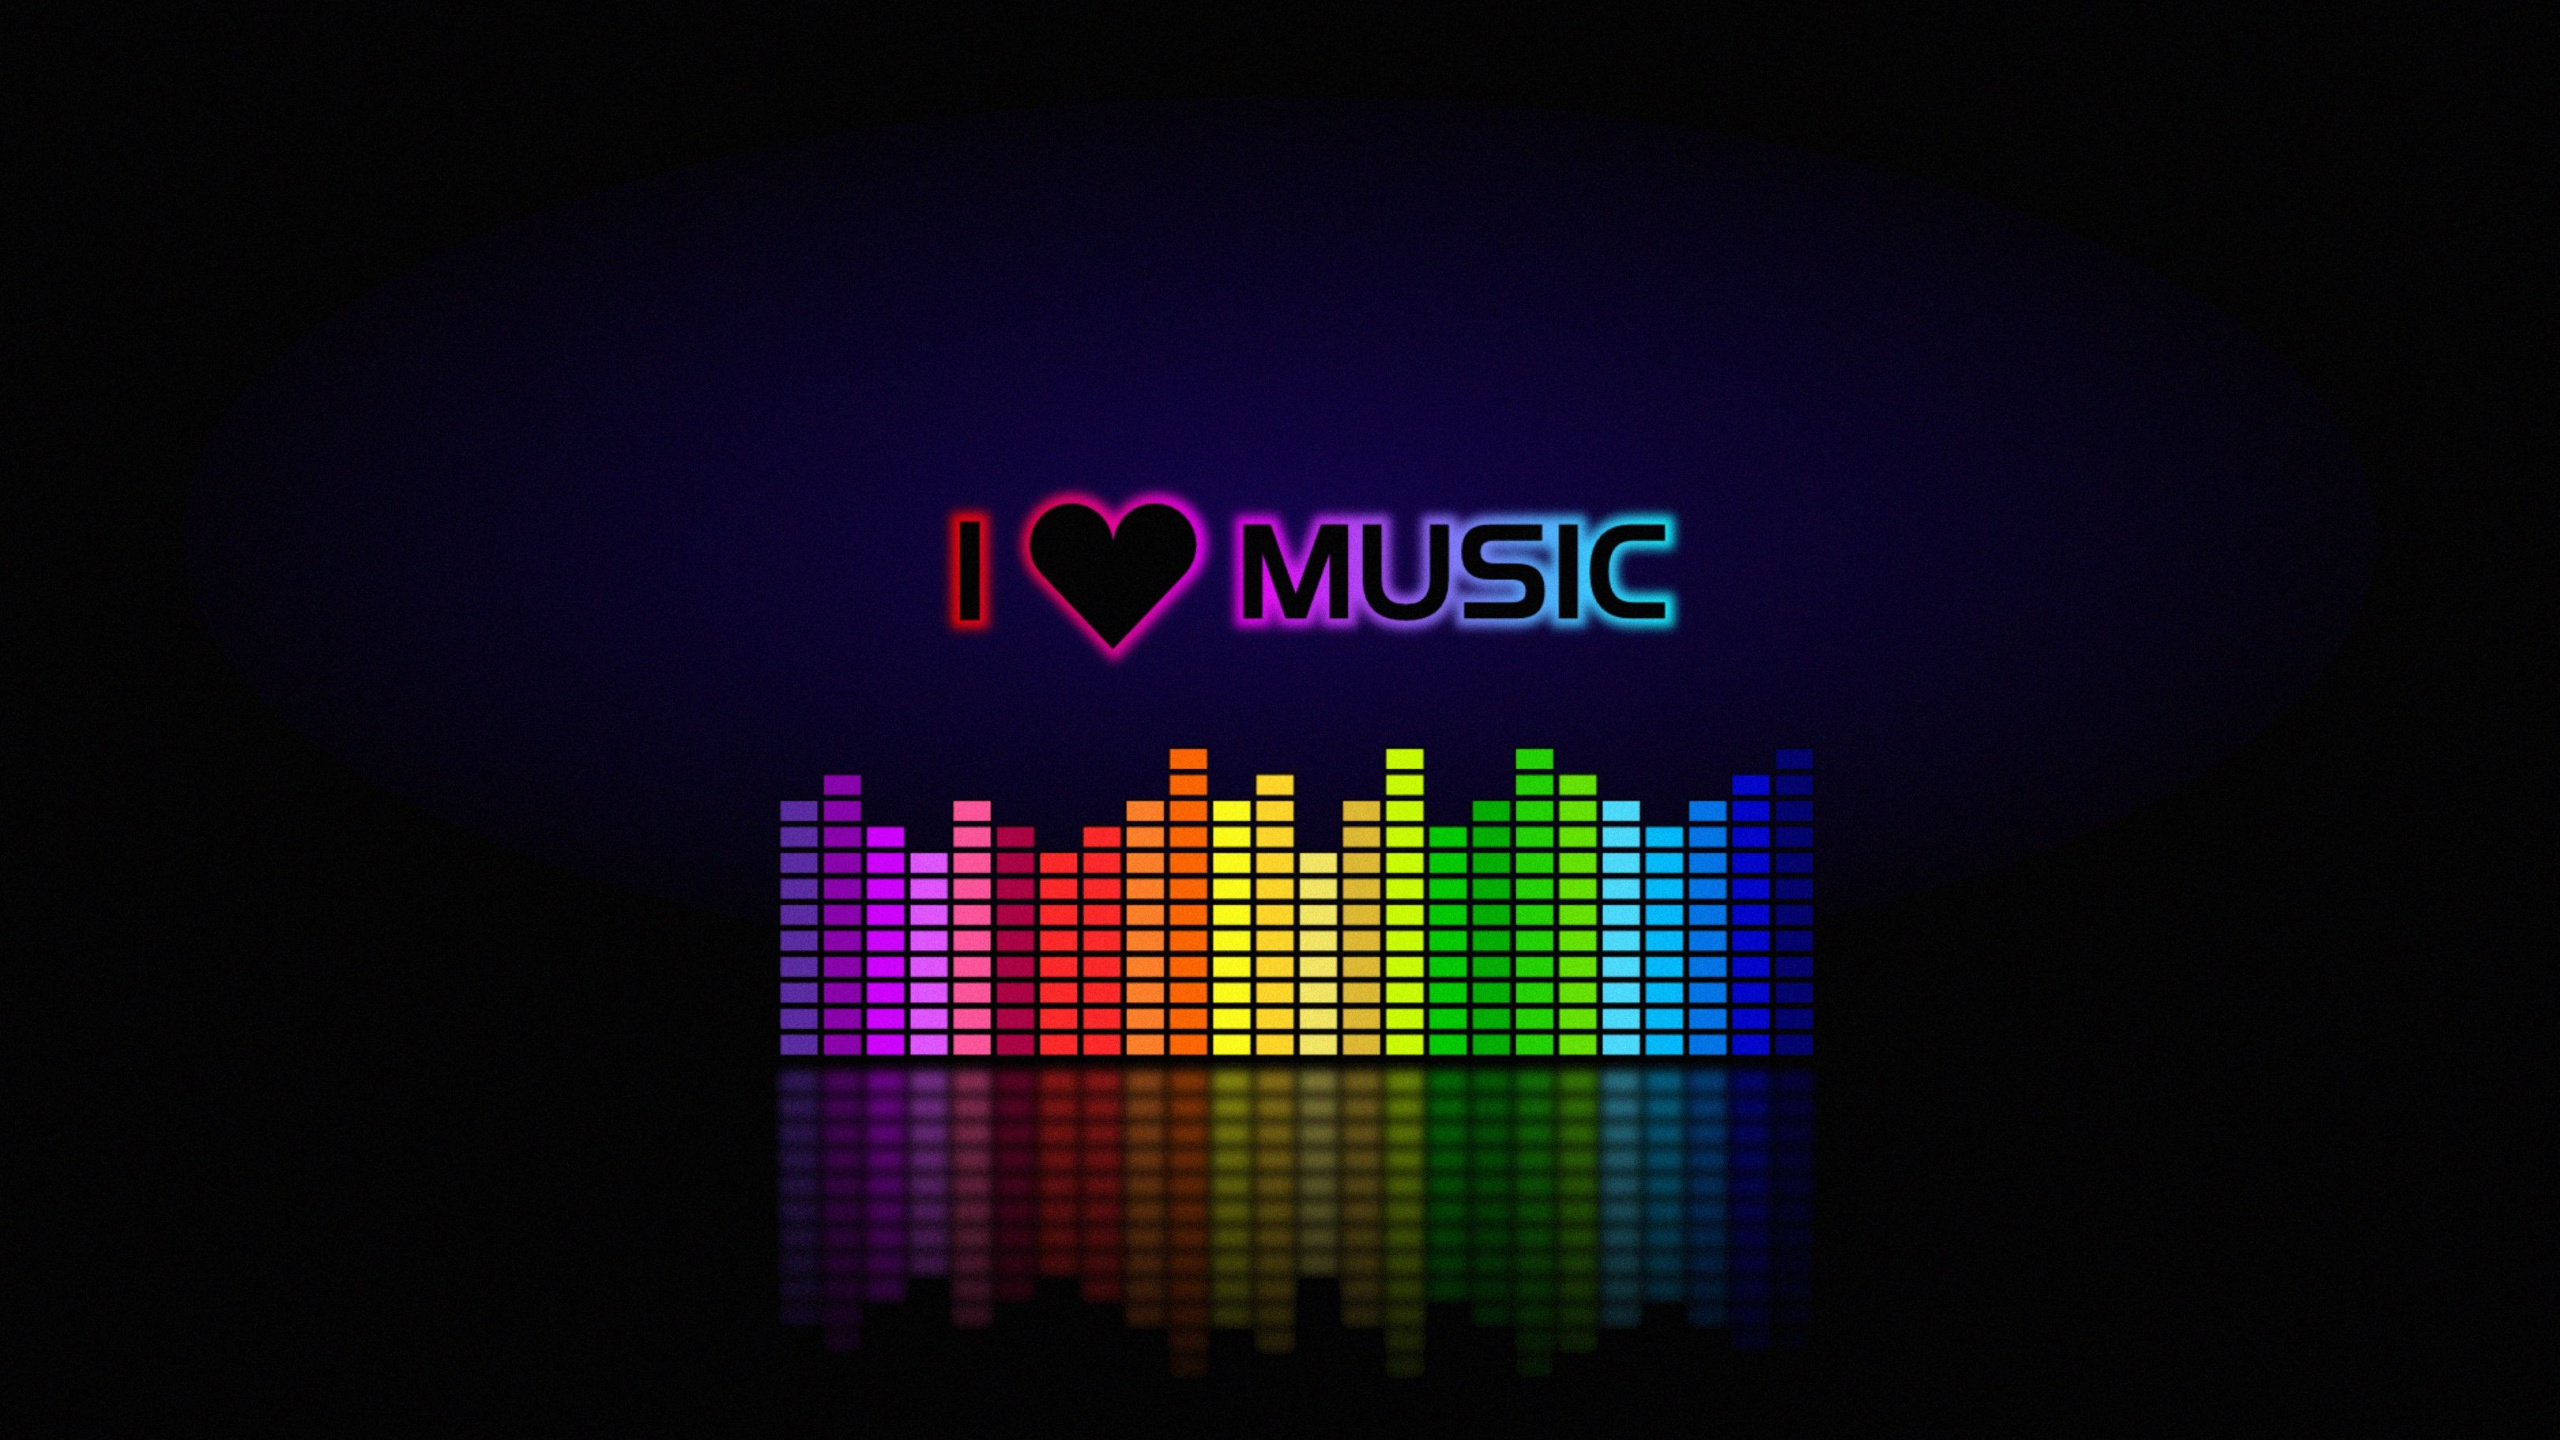 I love music m. Музыка картинки. Эквалайзер. Красивые картинки для музыкального канала. Музыкальный эквалайзер.